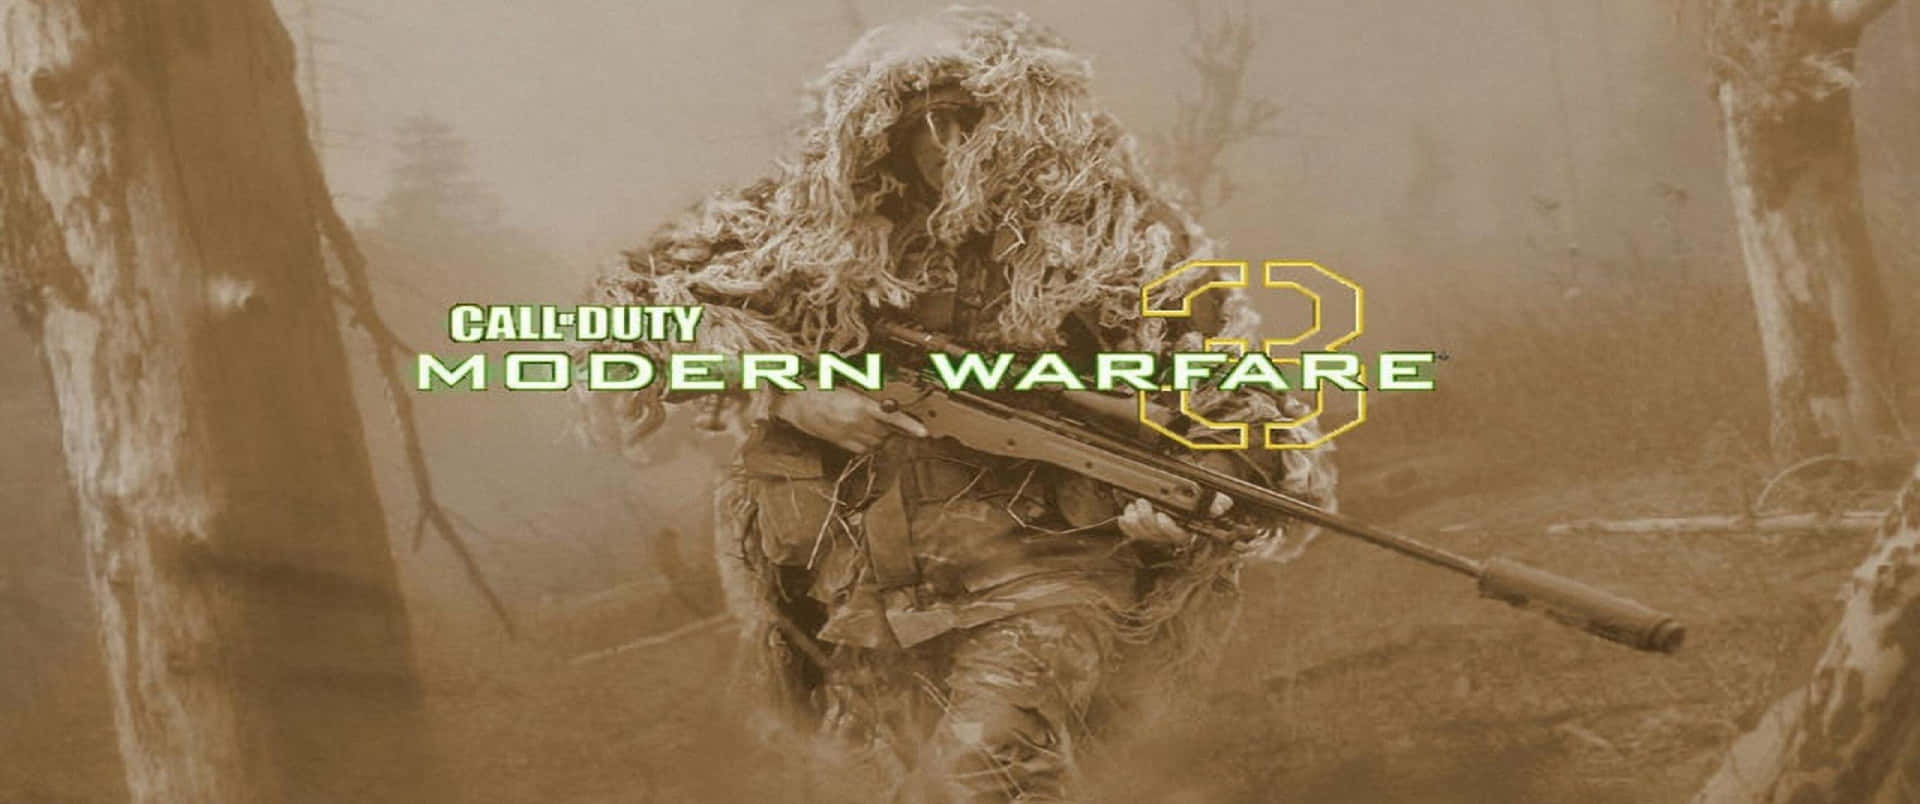 Soldatocon Rete Mimetica Sfondo Call Of Duty Modern Warfare 3440x1440p